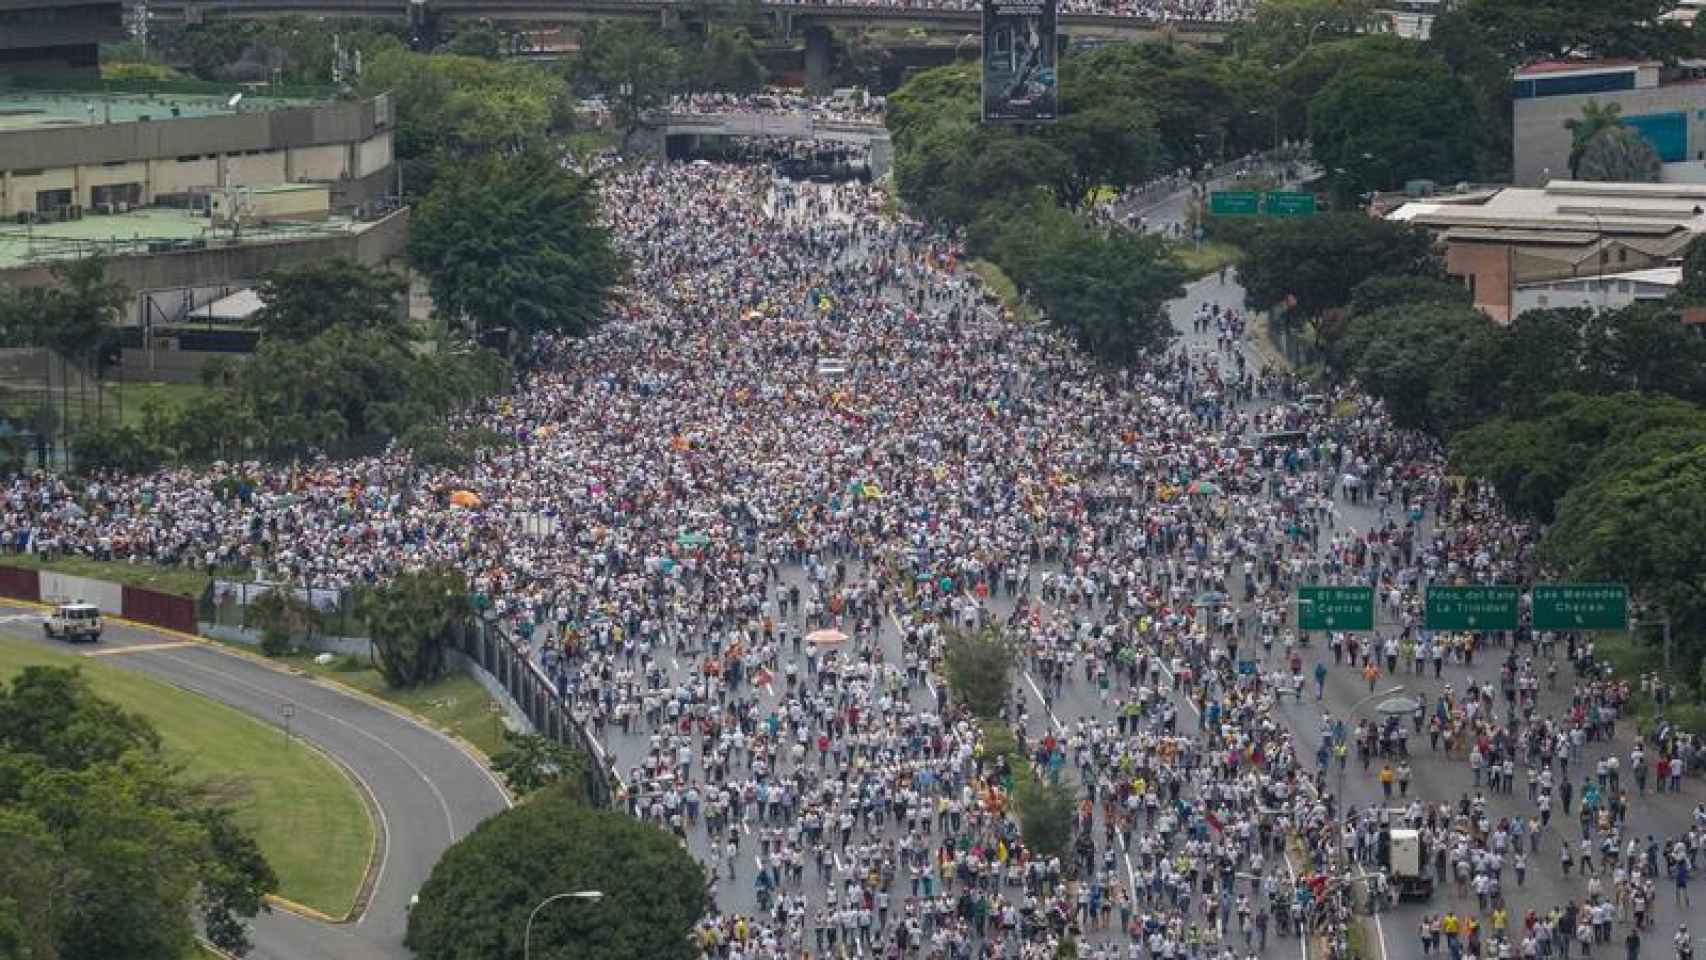 Vista general de la manifestación en una de las avenidas de la capital venezolana